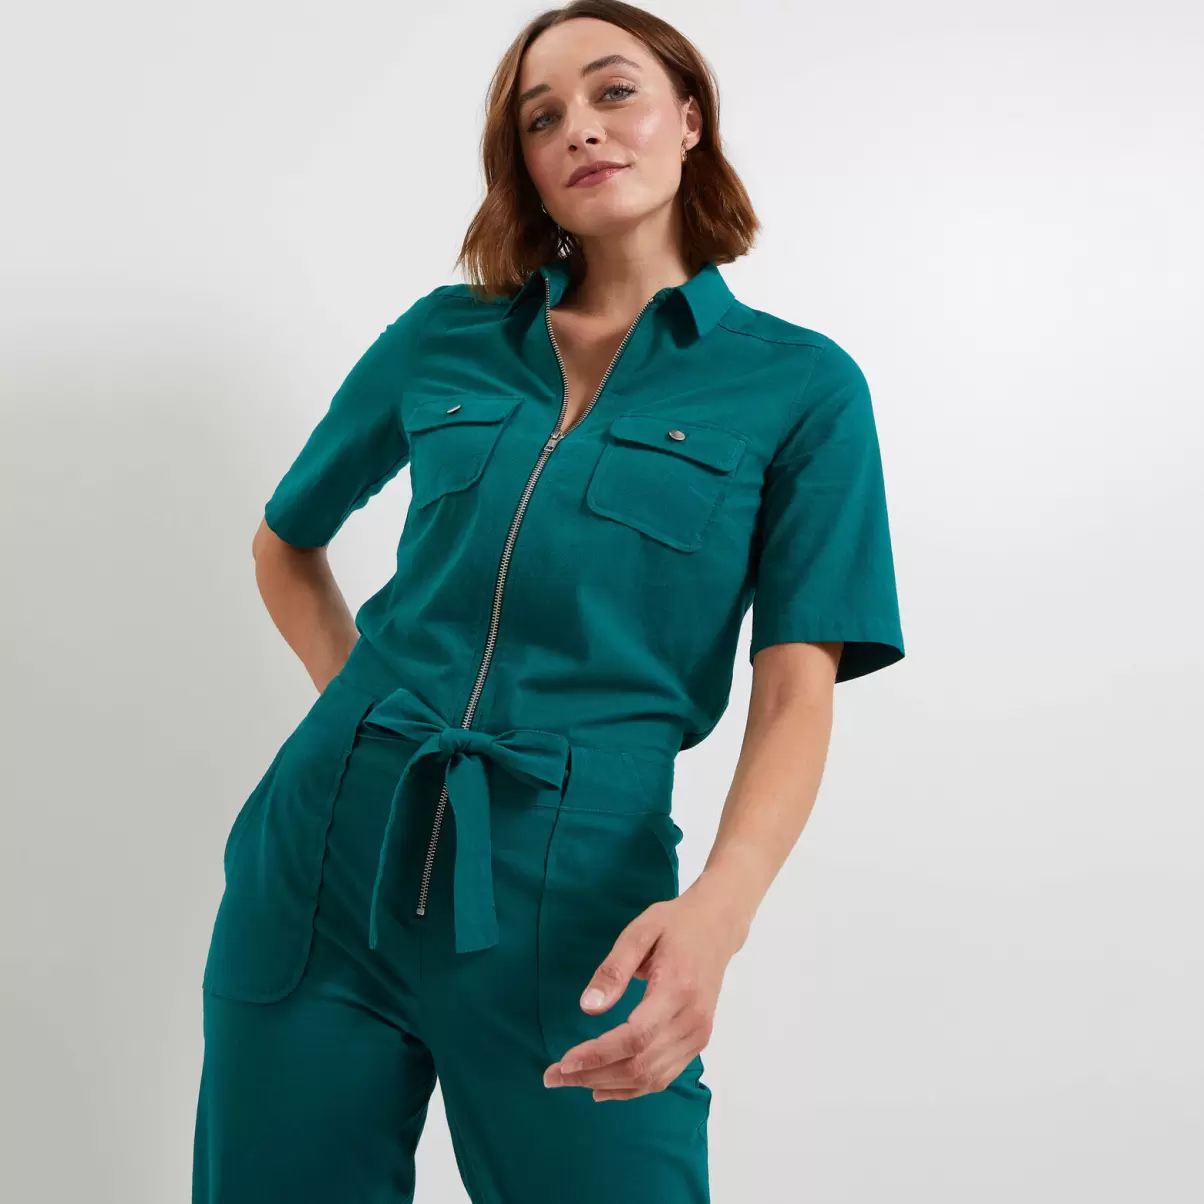 Robes Vert Femme Grain De Malic Combinaison Pantalon Zippée Femme Réduction De Prix - 2